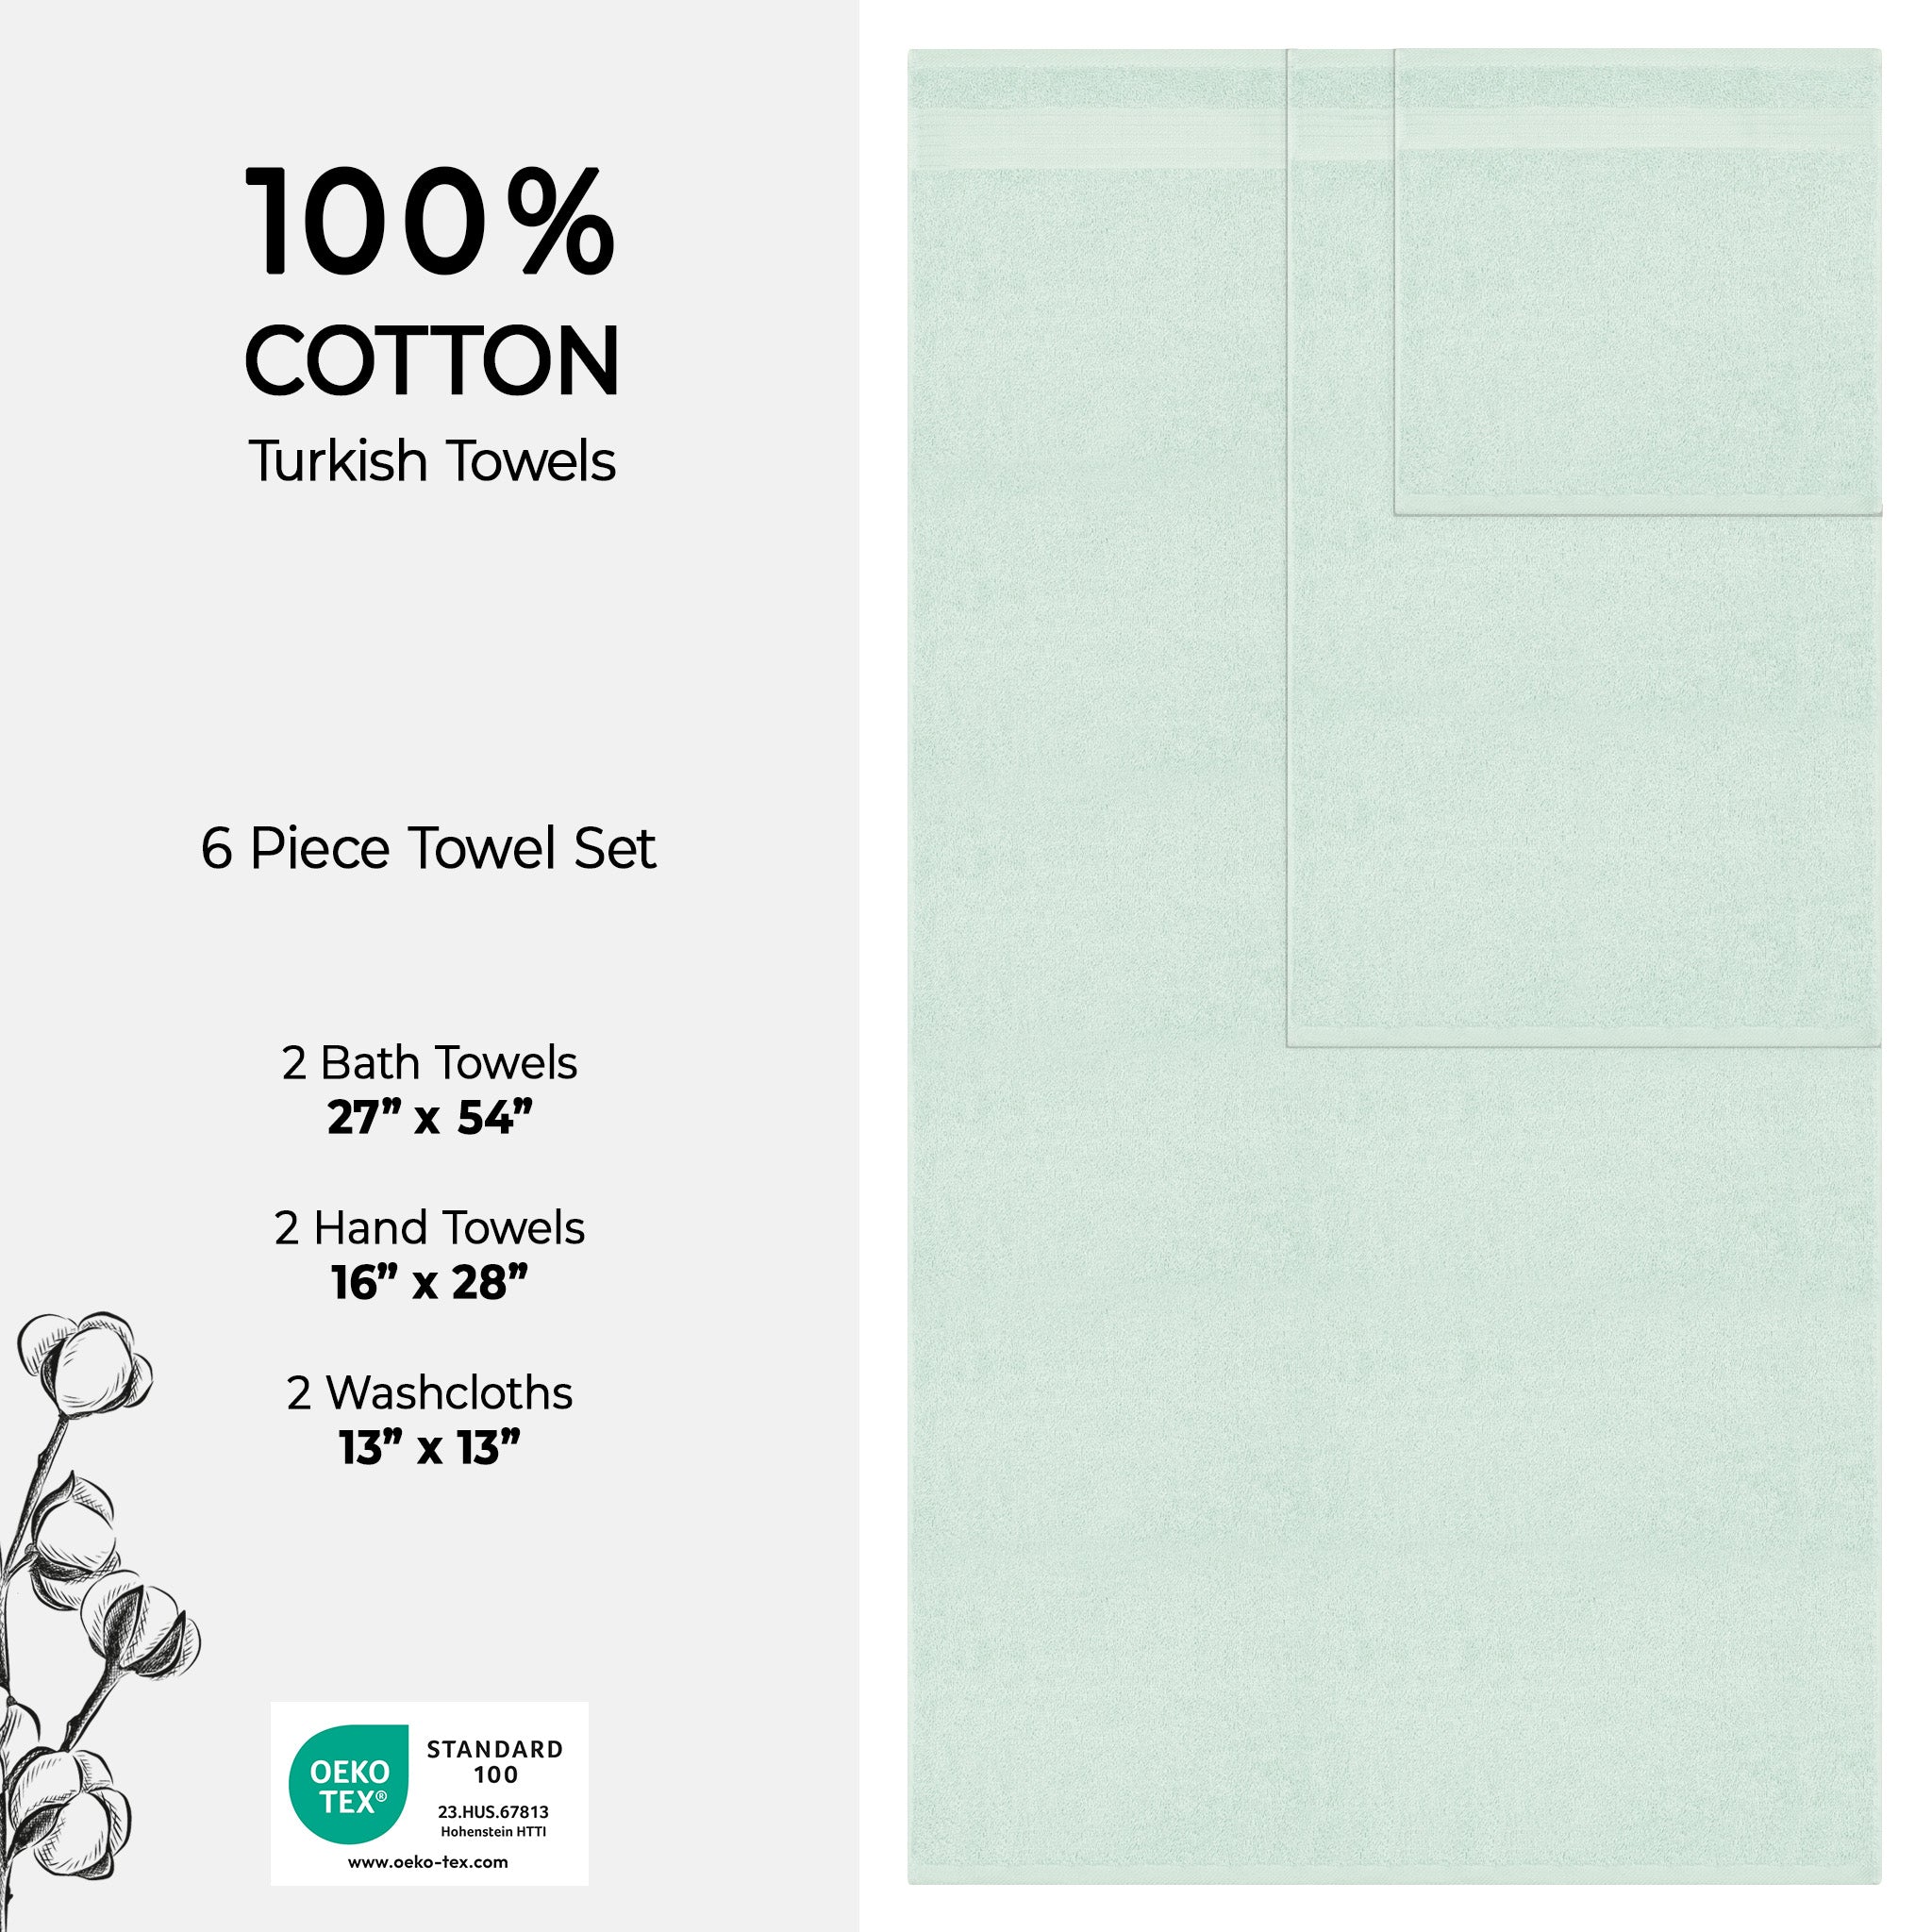 American Soft Linen Bekos 100% Cotton Turkish Towels 6 Piece Bath Towel Set -mint-04